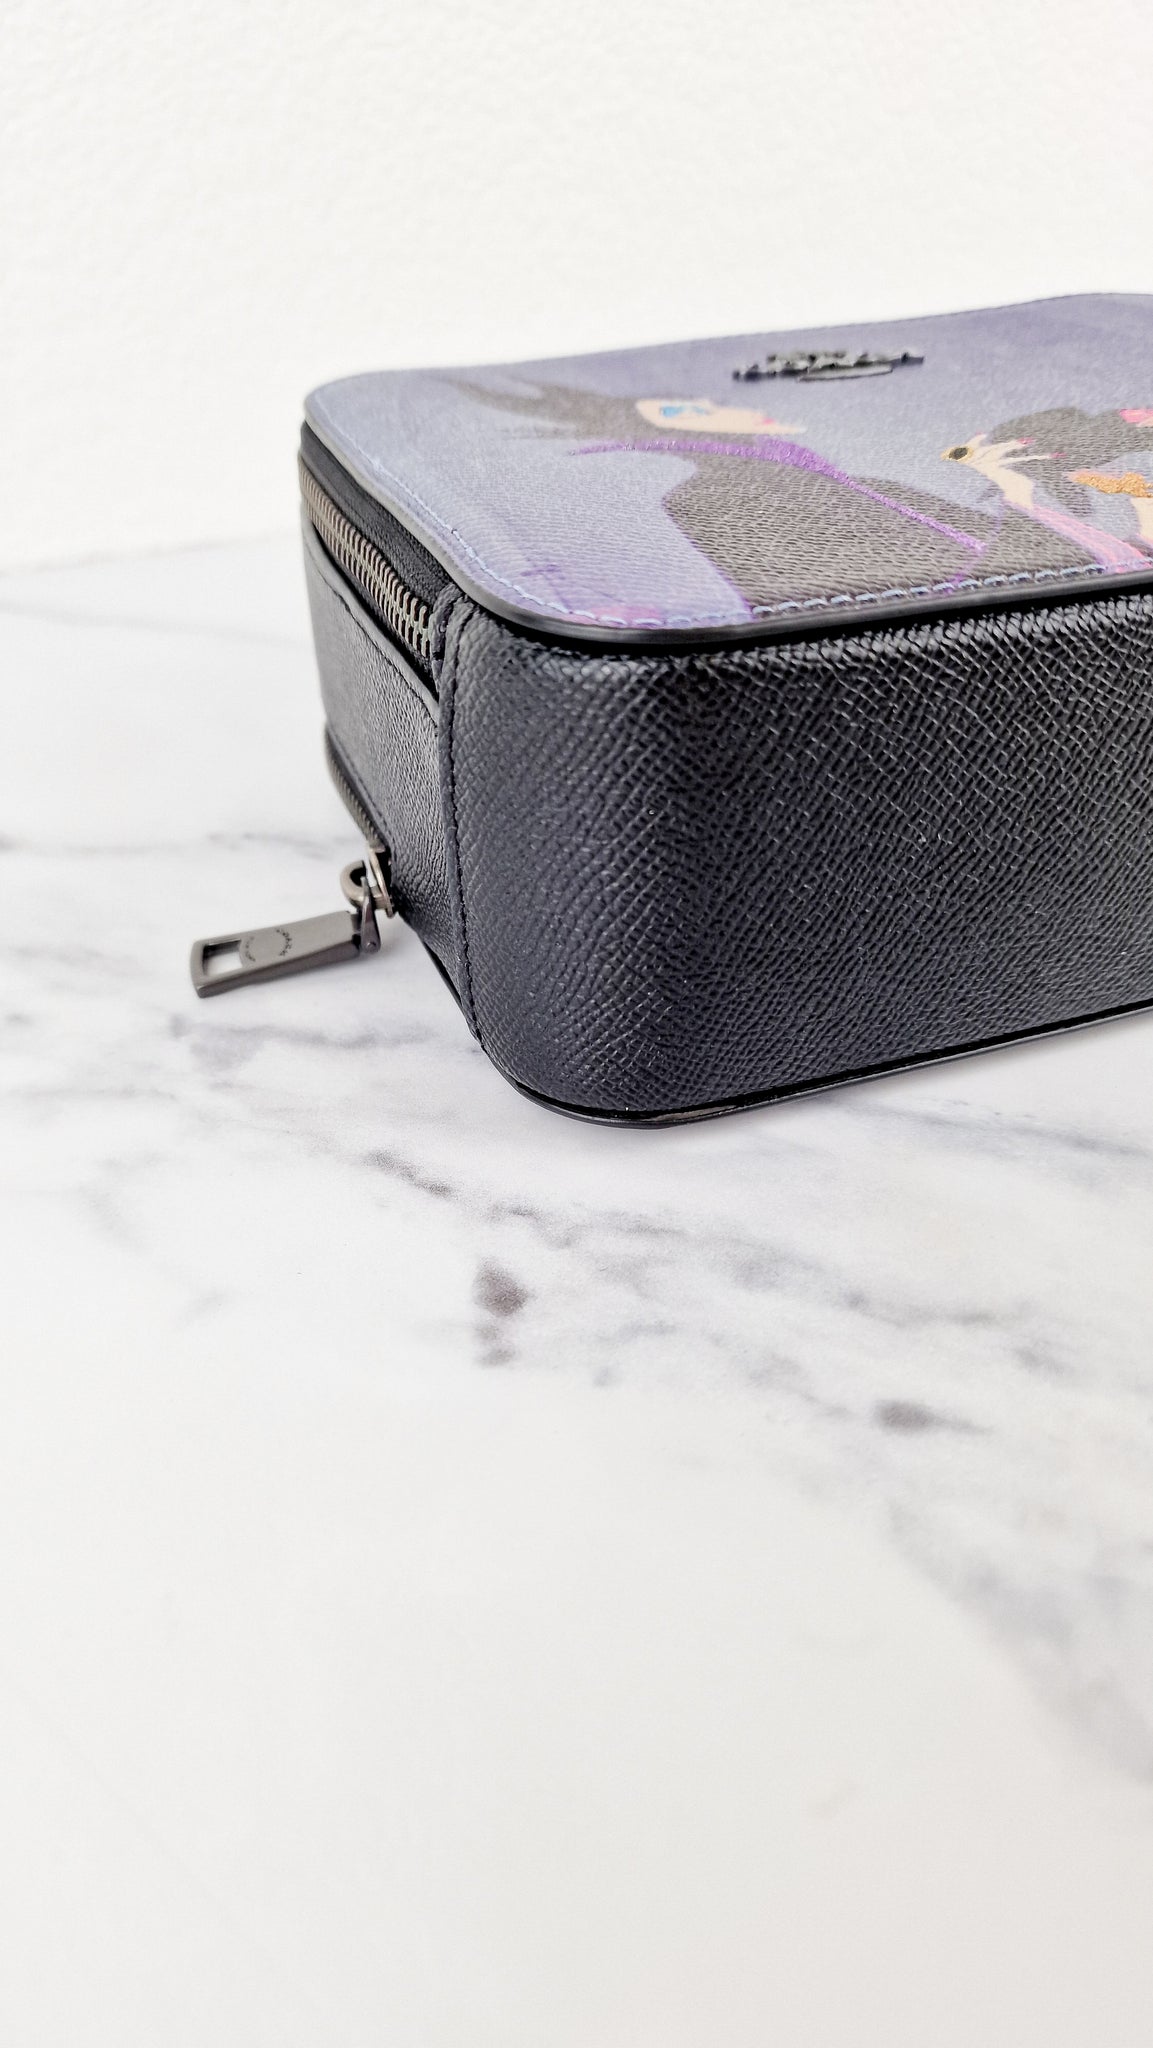 Disney x Coach Box Crossbody With Maleficent Motif Lunchbox Bag